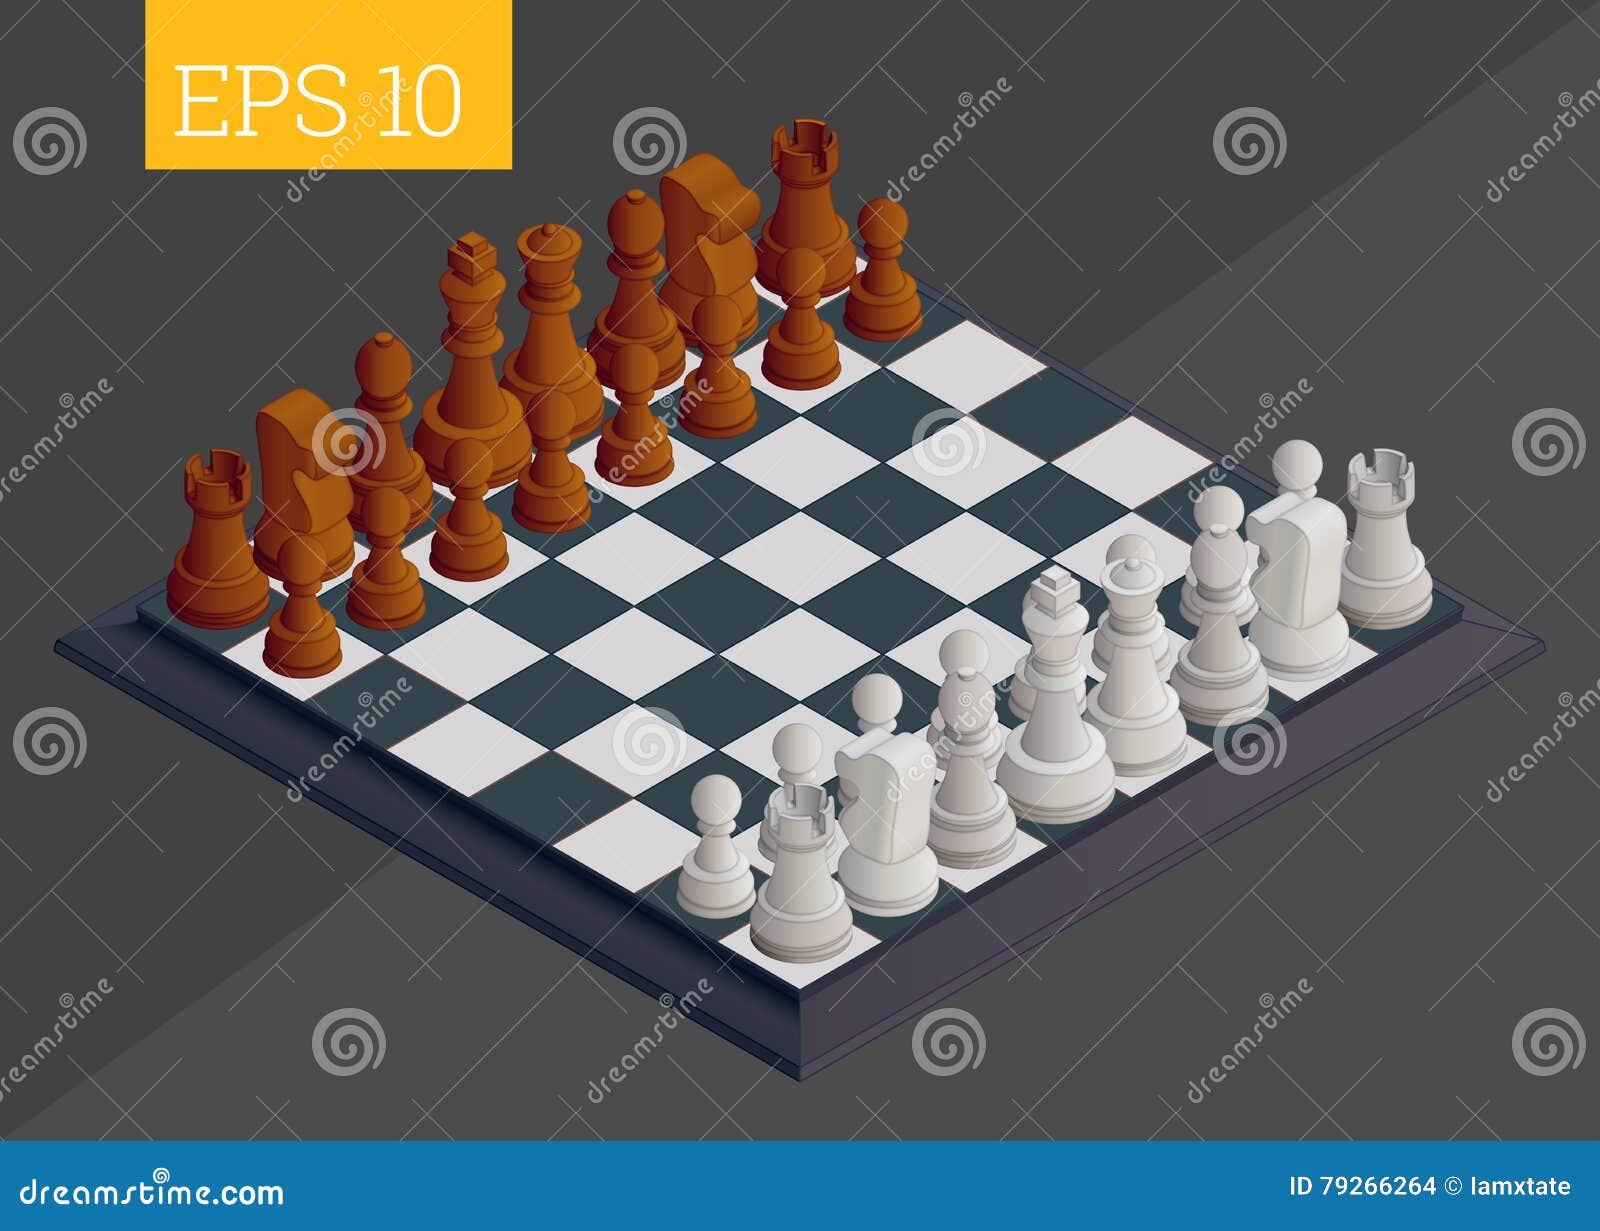 Um tabuleiro de xadrez com o número 8 nele